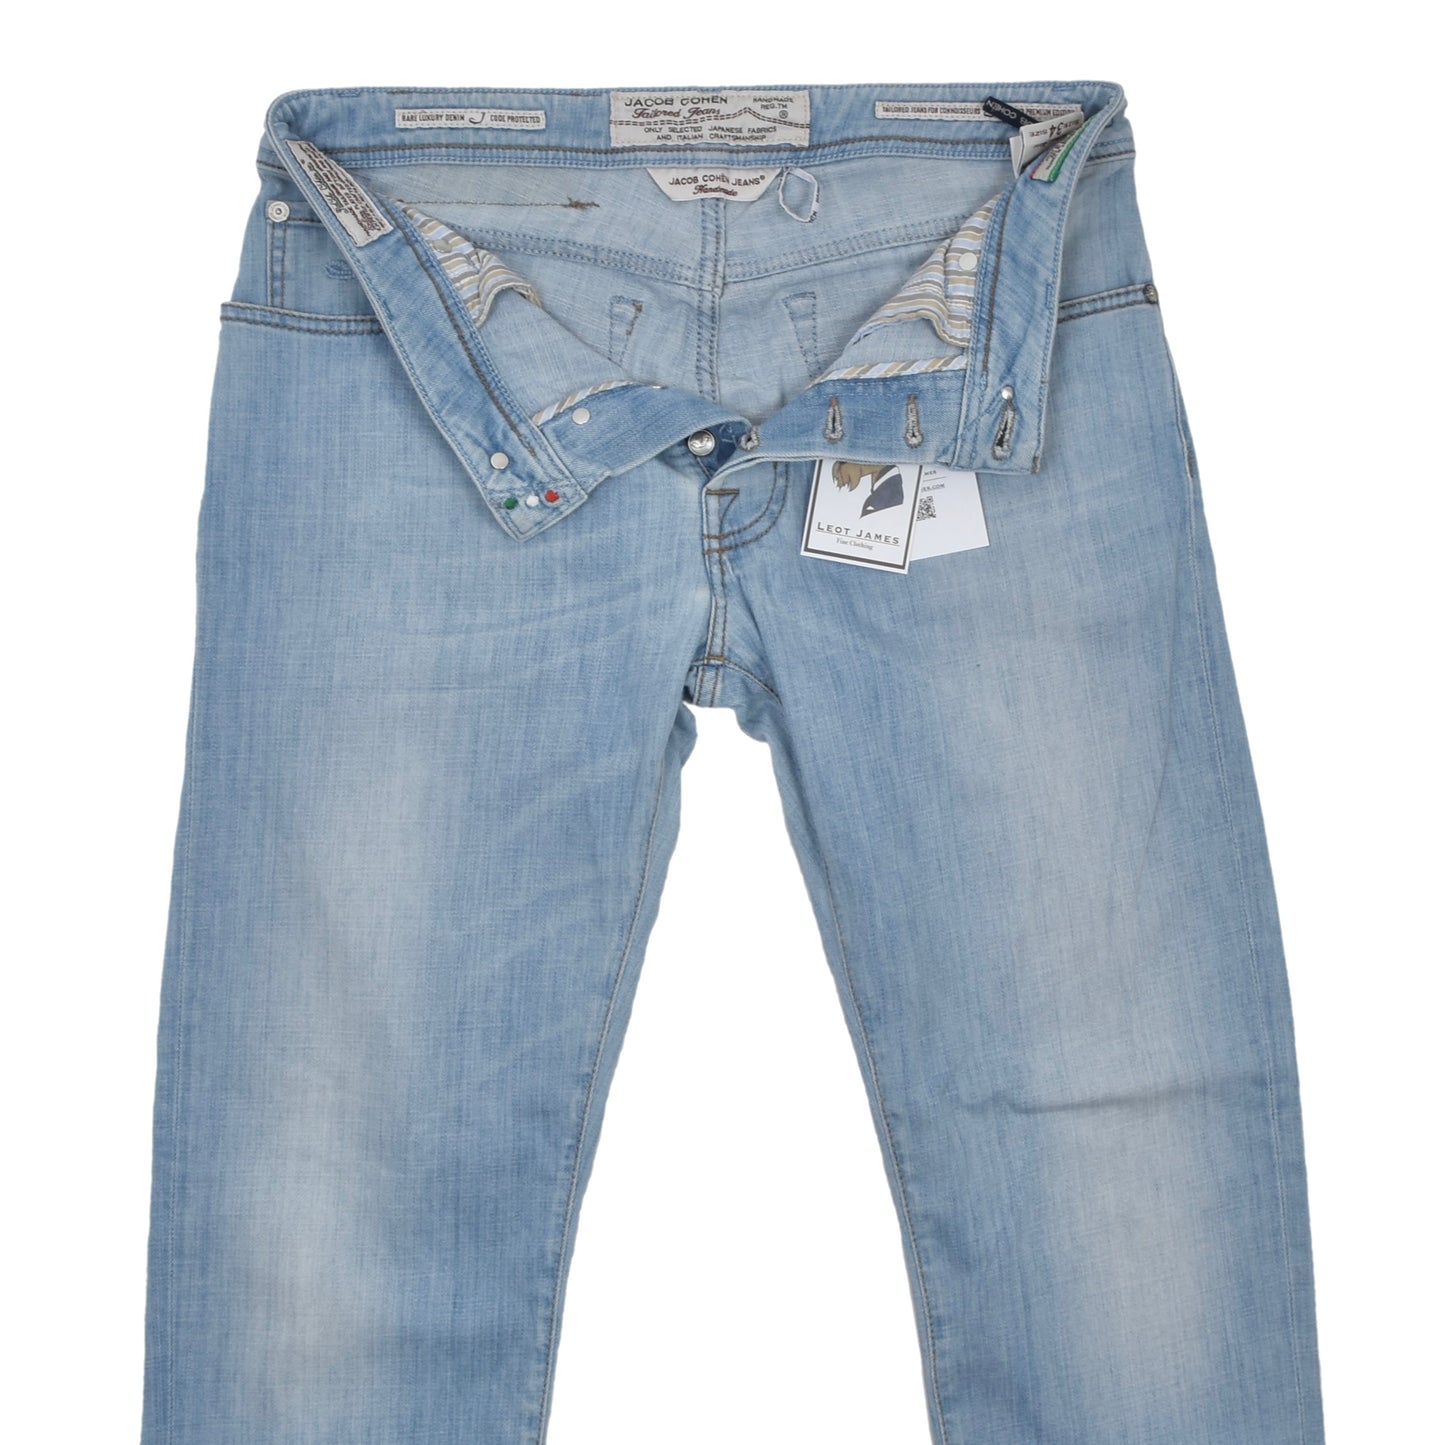 Jacob Cohën Jeans Size 34 Type J628 Comfort - Light Wash